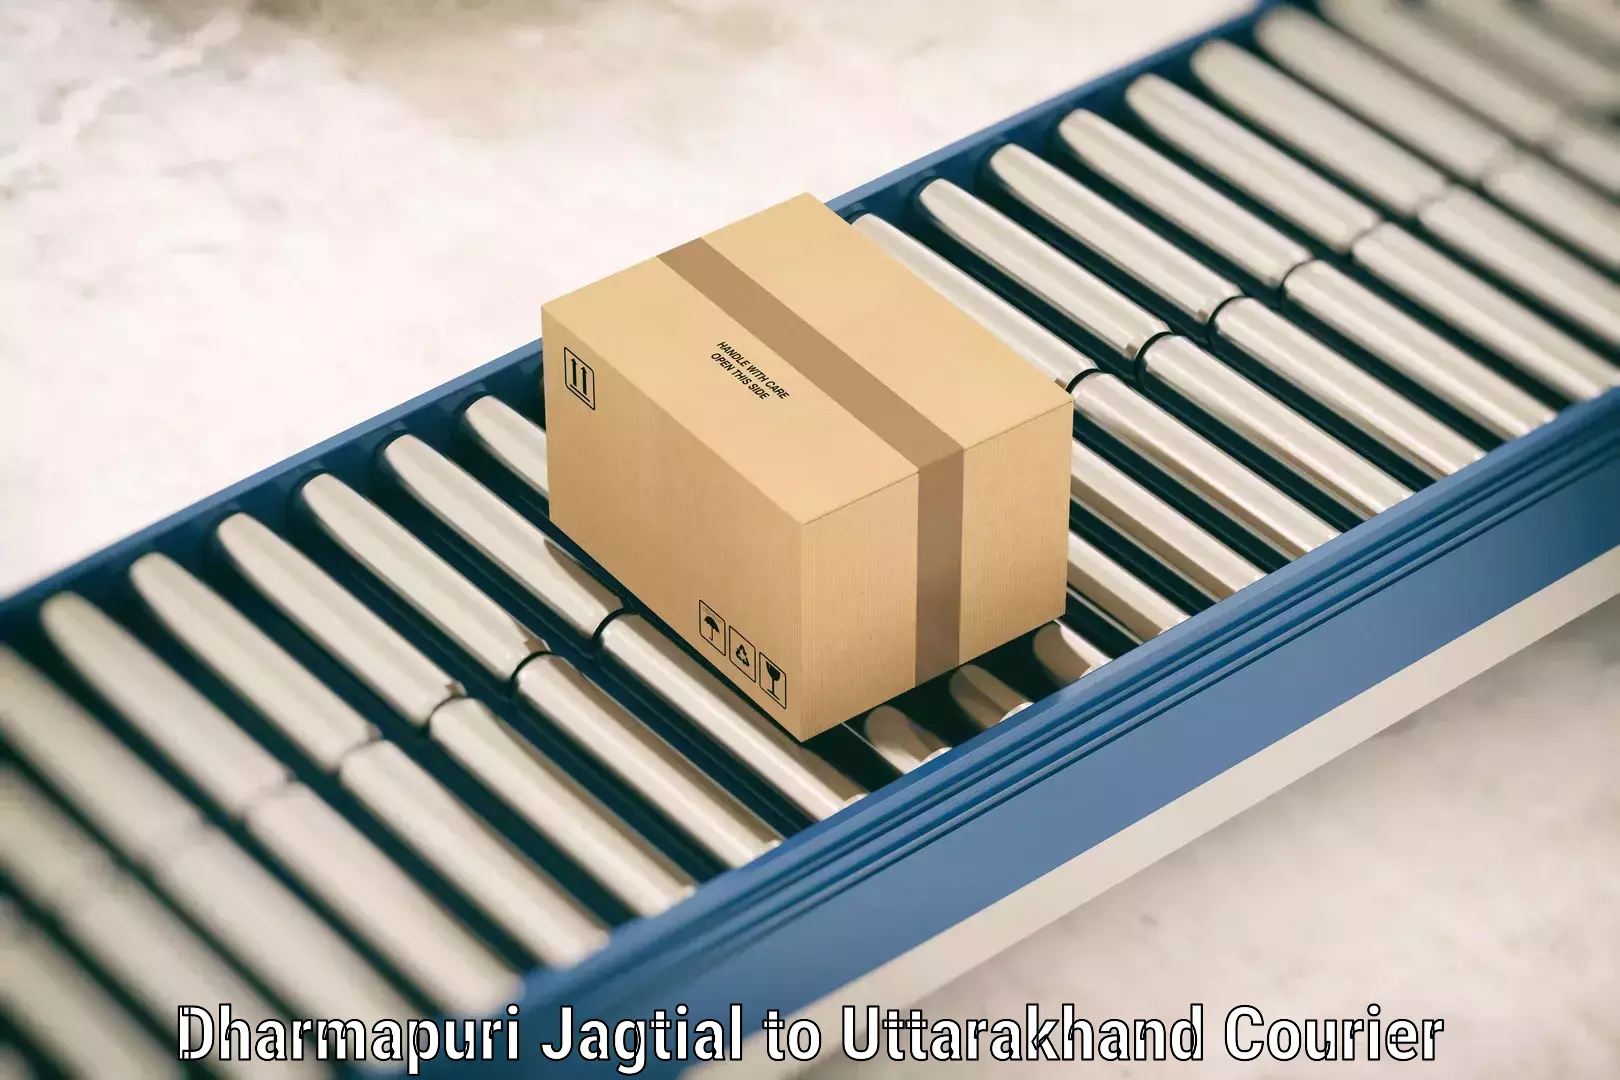 Luggage shipment processing Dharmapuri Jagtial to Karnaprayag